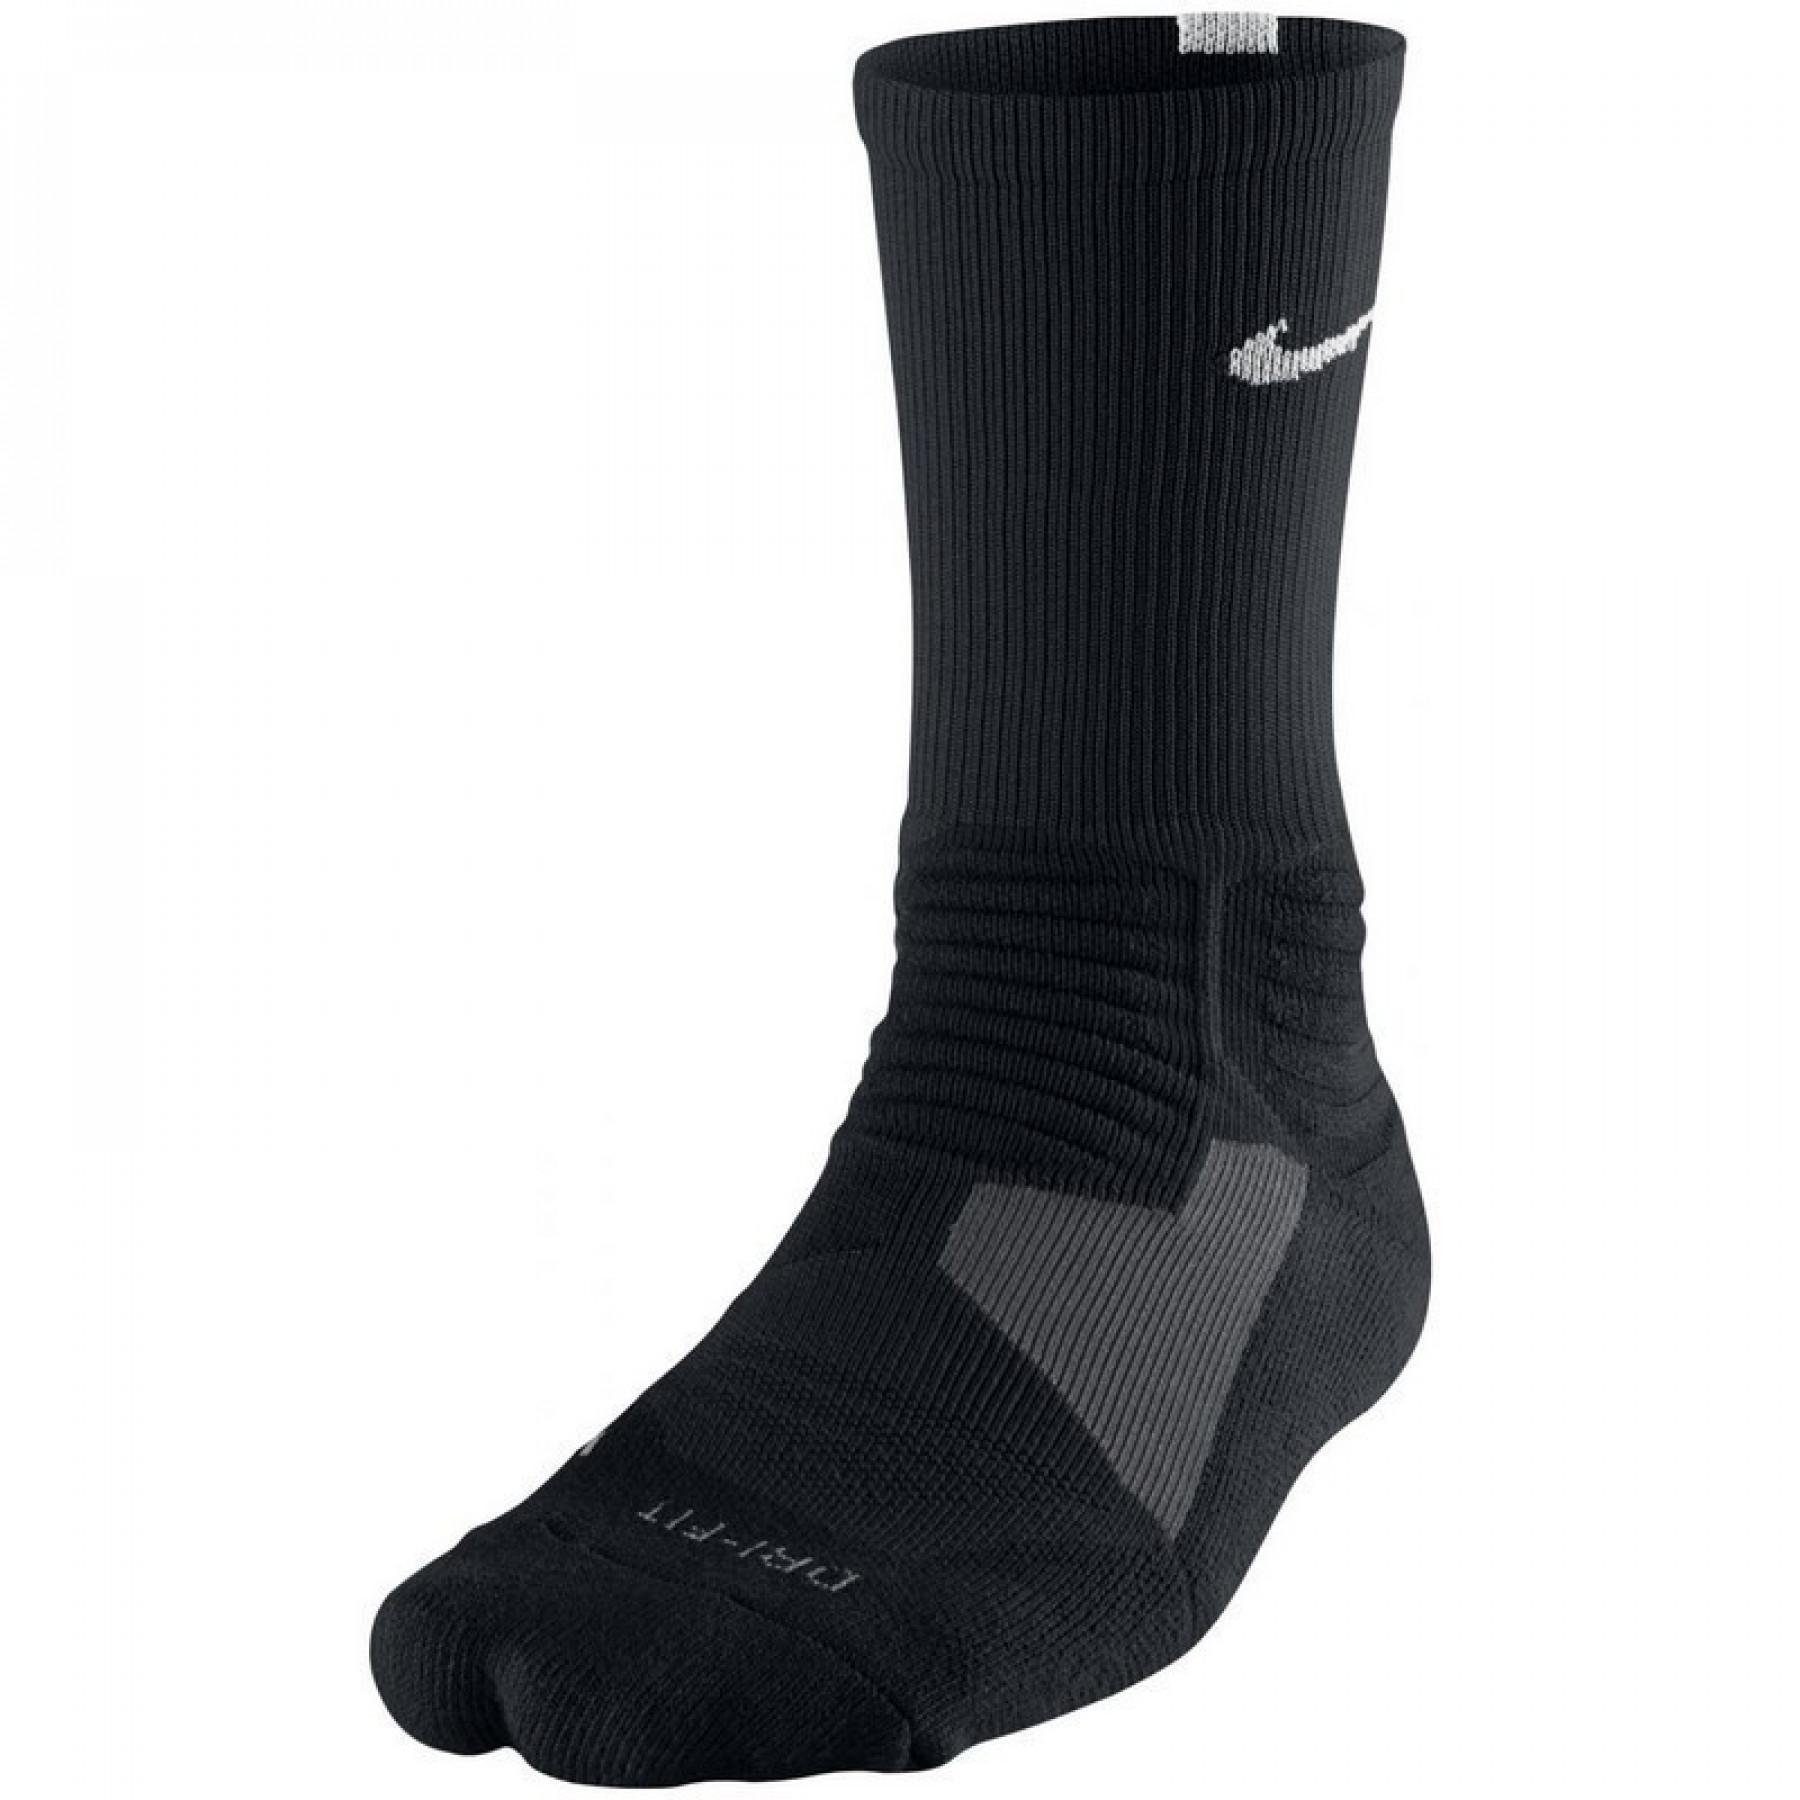 Conjunto de 3 pares de meias Nike HyperElite